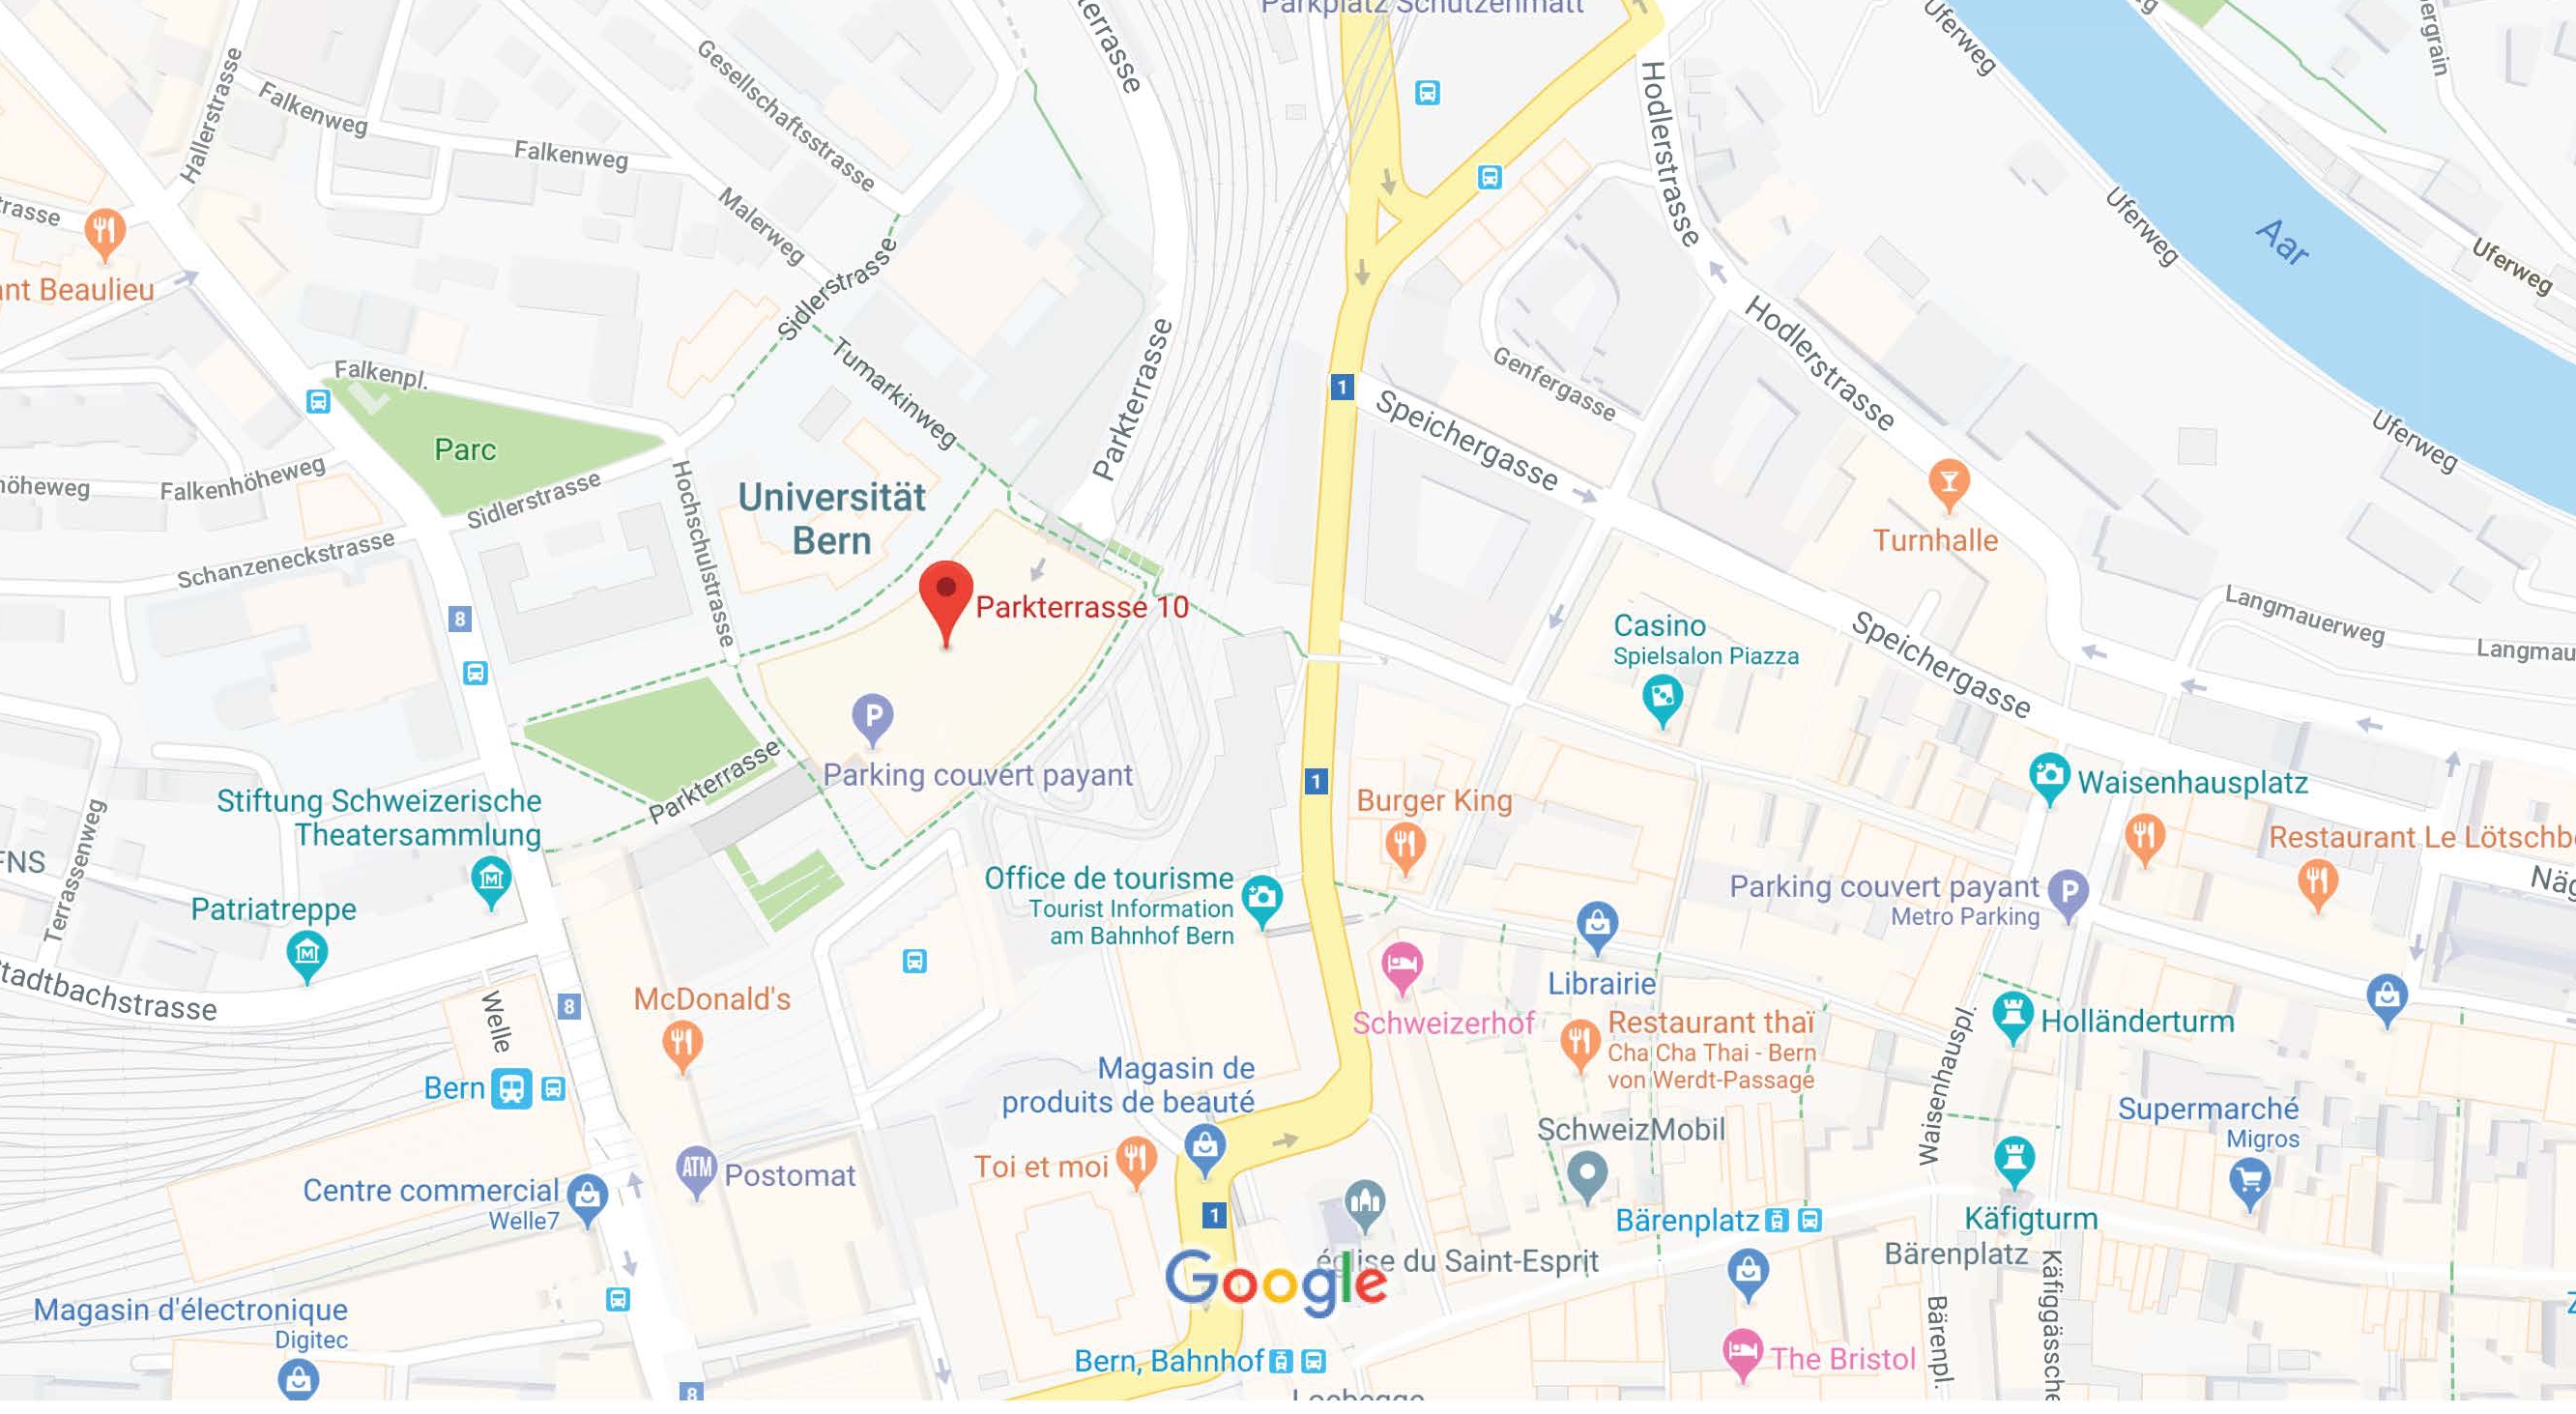 Parkterrasse_10_Google_Maps.jpg